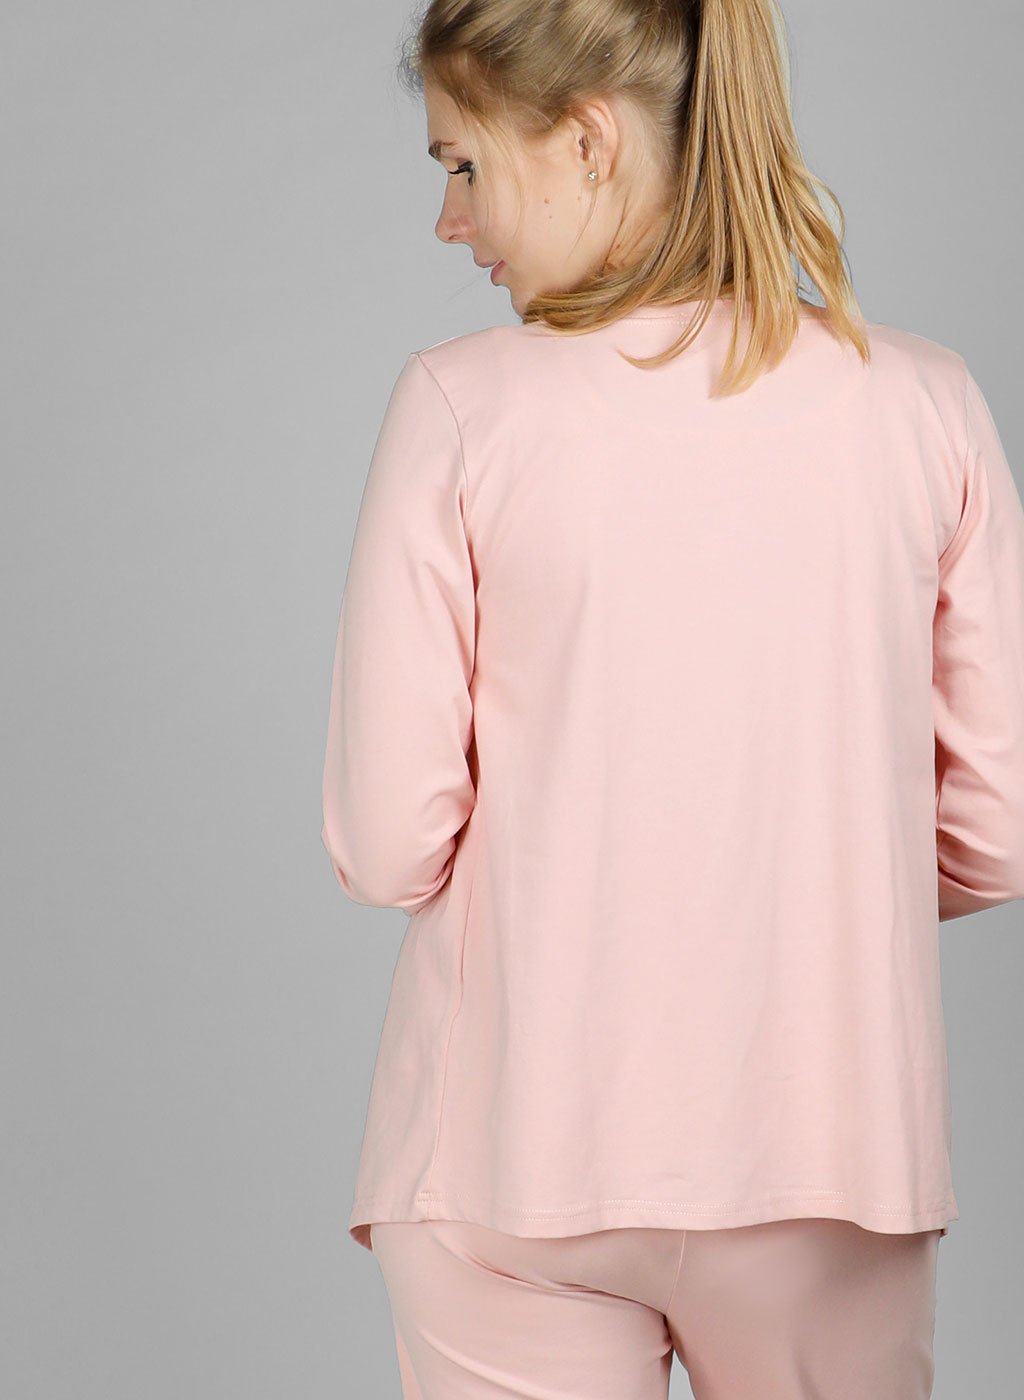 Lovemère Sleepwear Blush Pink Maternity & Nursing Pajamas